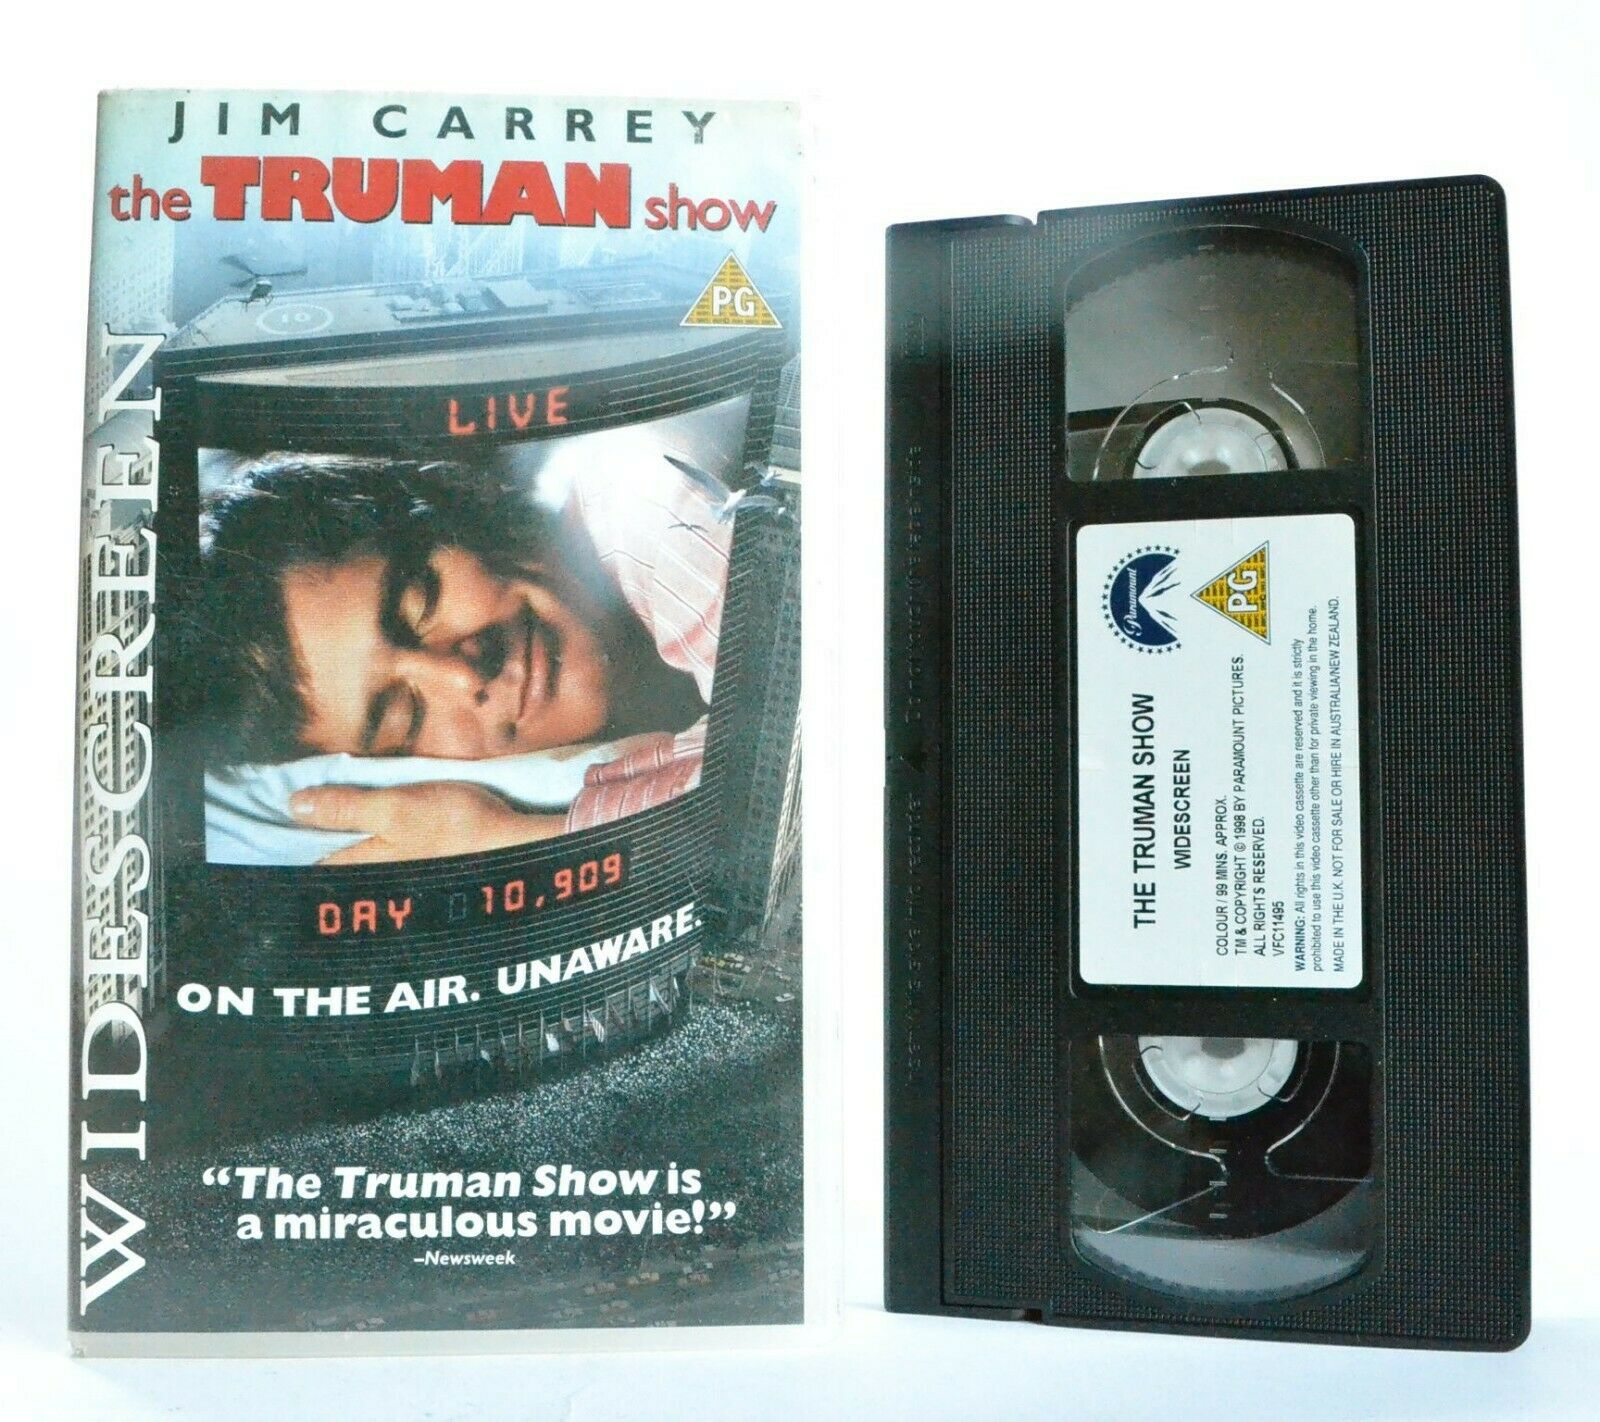 The Truman Show: Paramount (1999) - Widescreen Drama - Jim Carrey - Pal VHS-